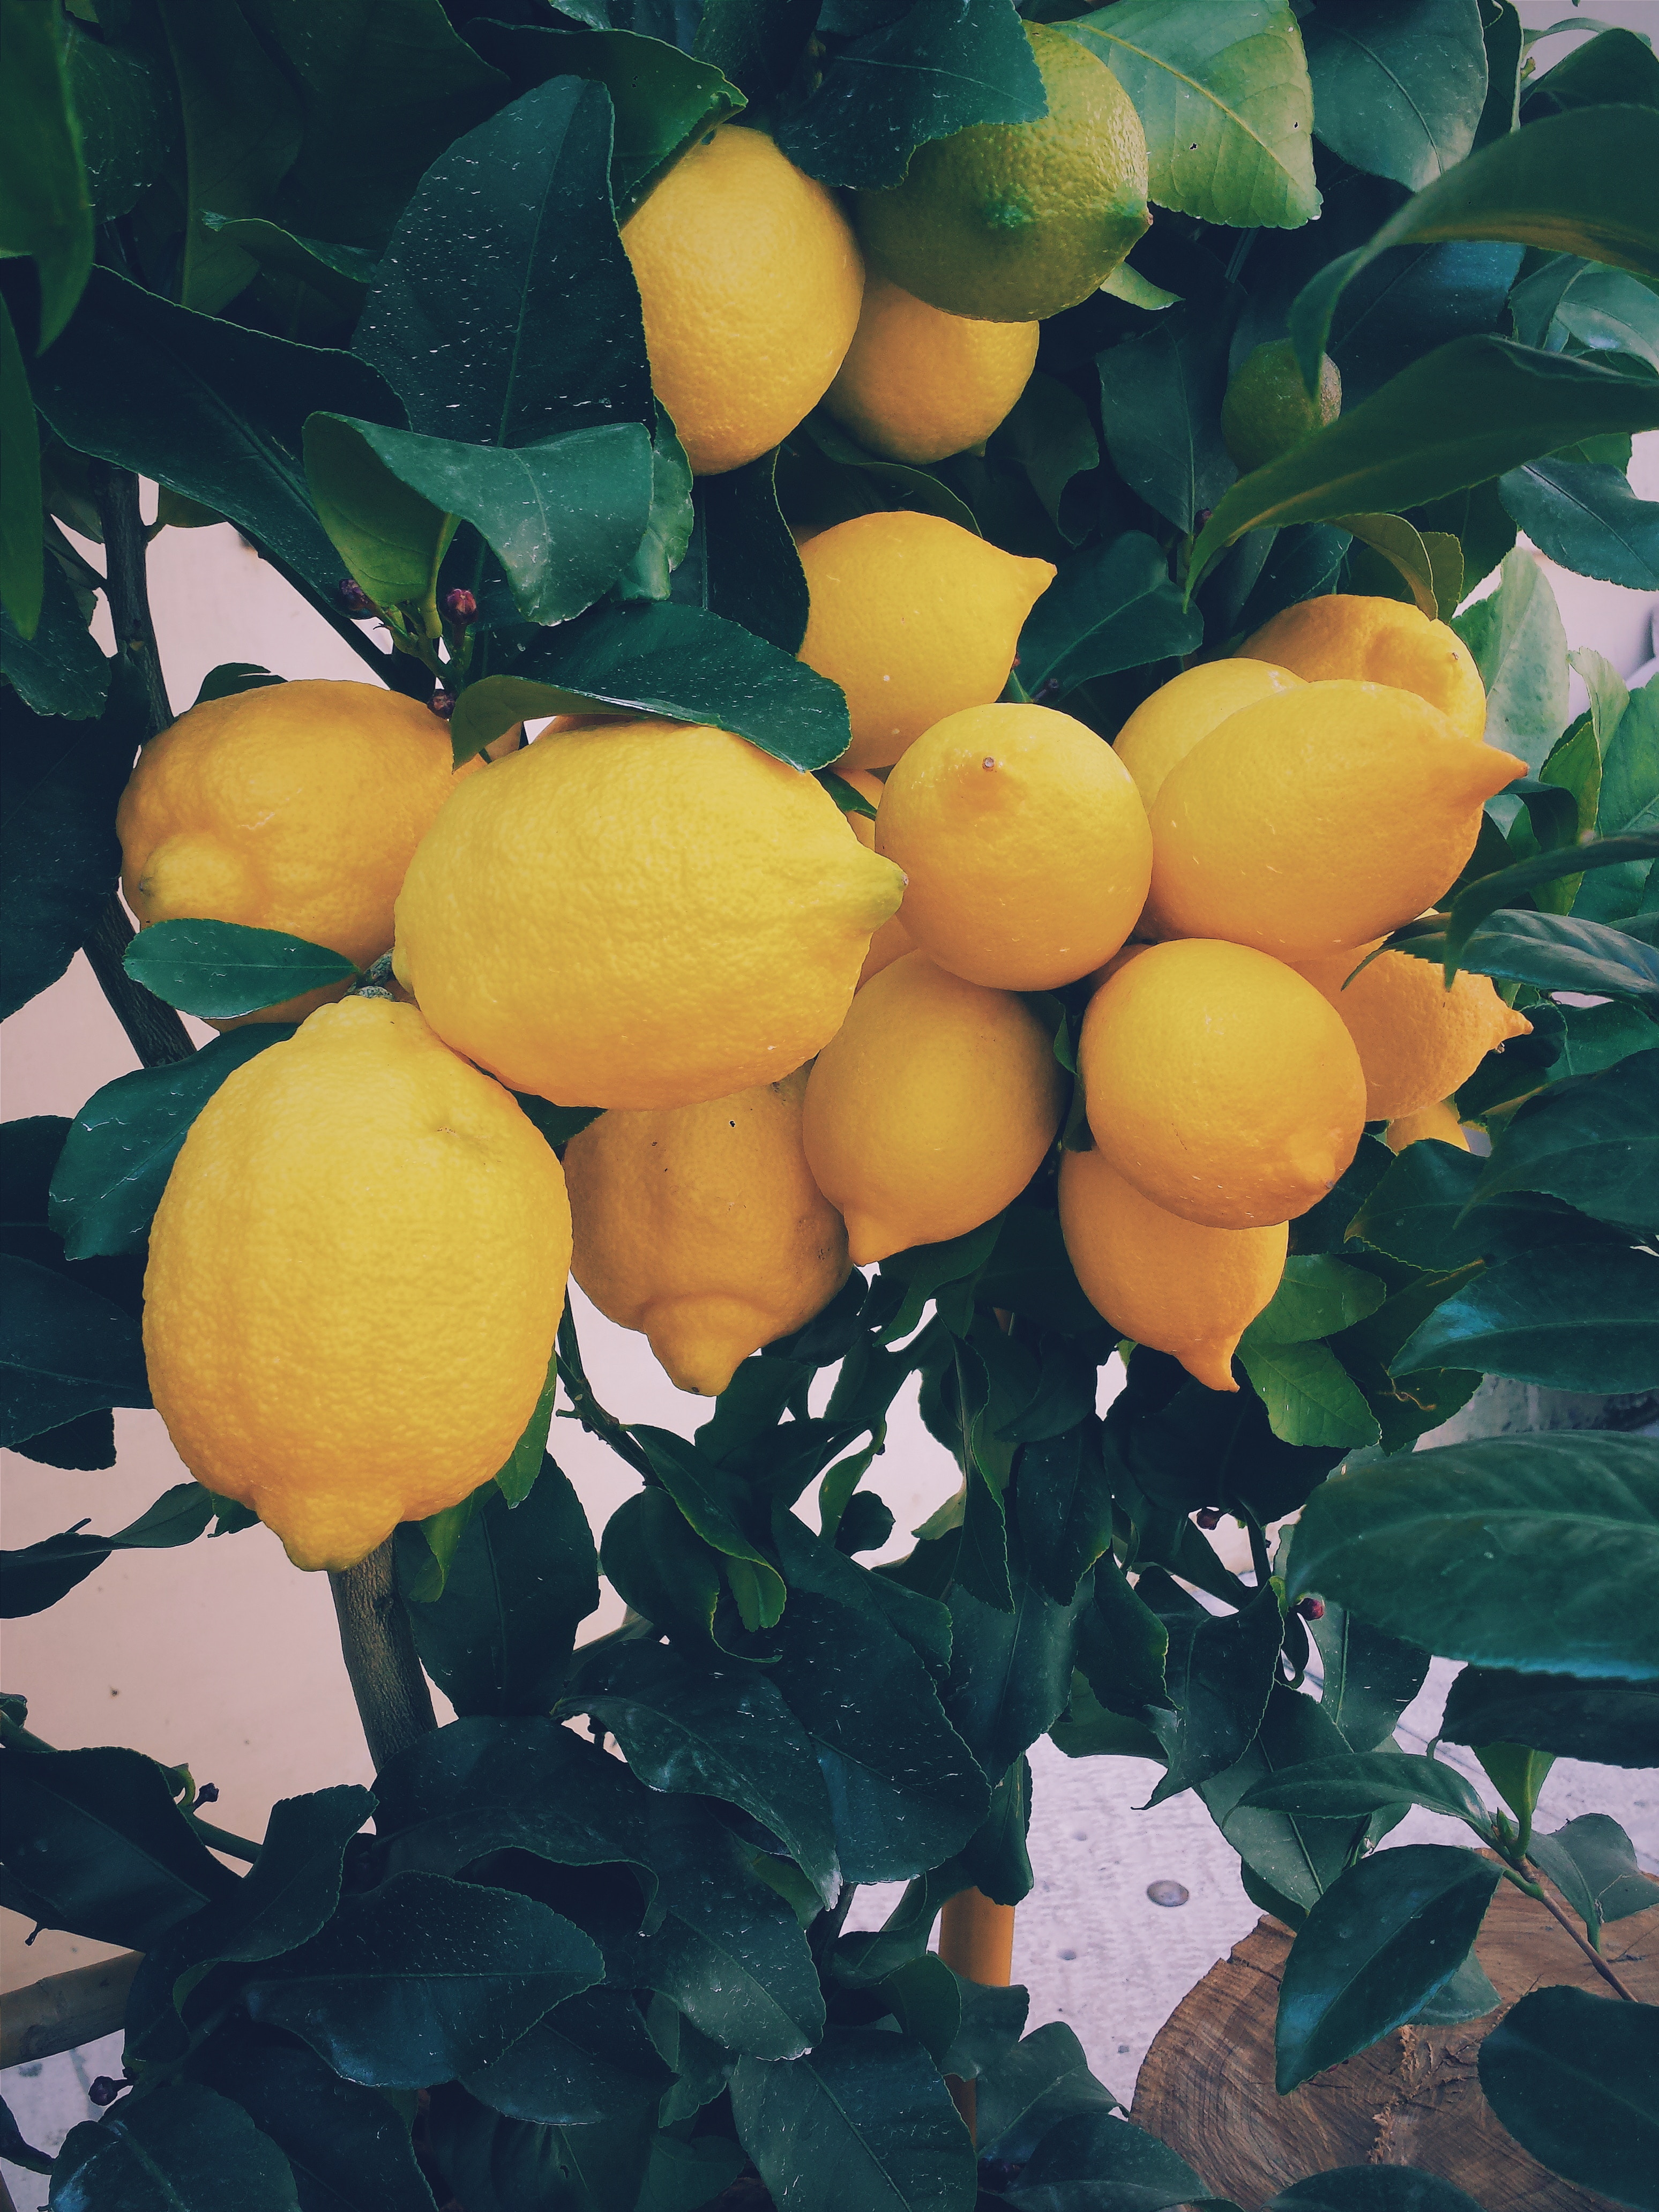 Multiple lemons on a tree